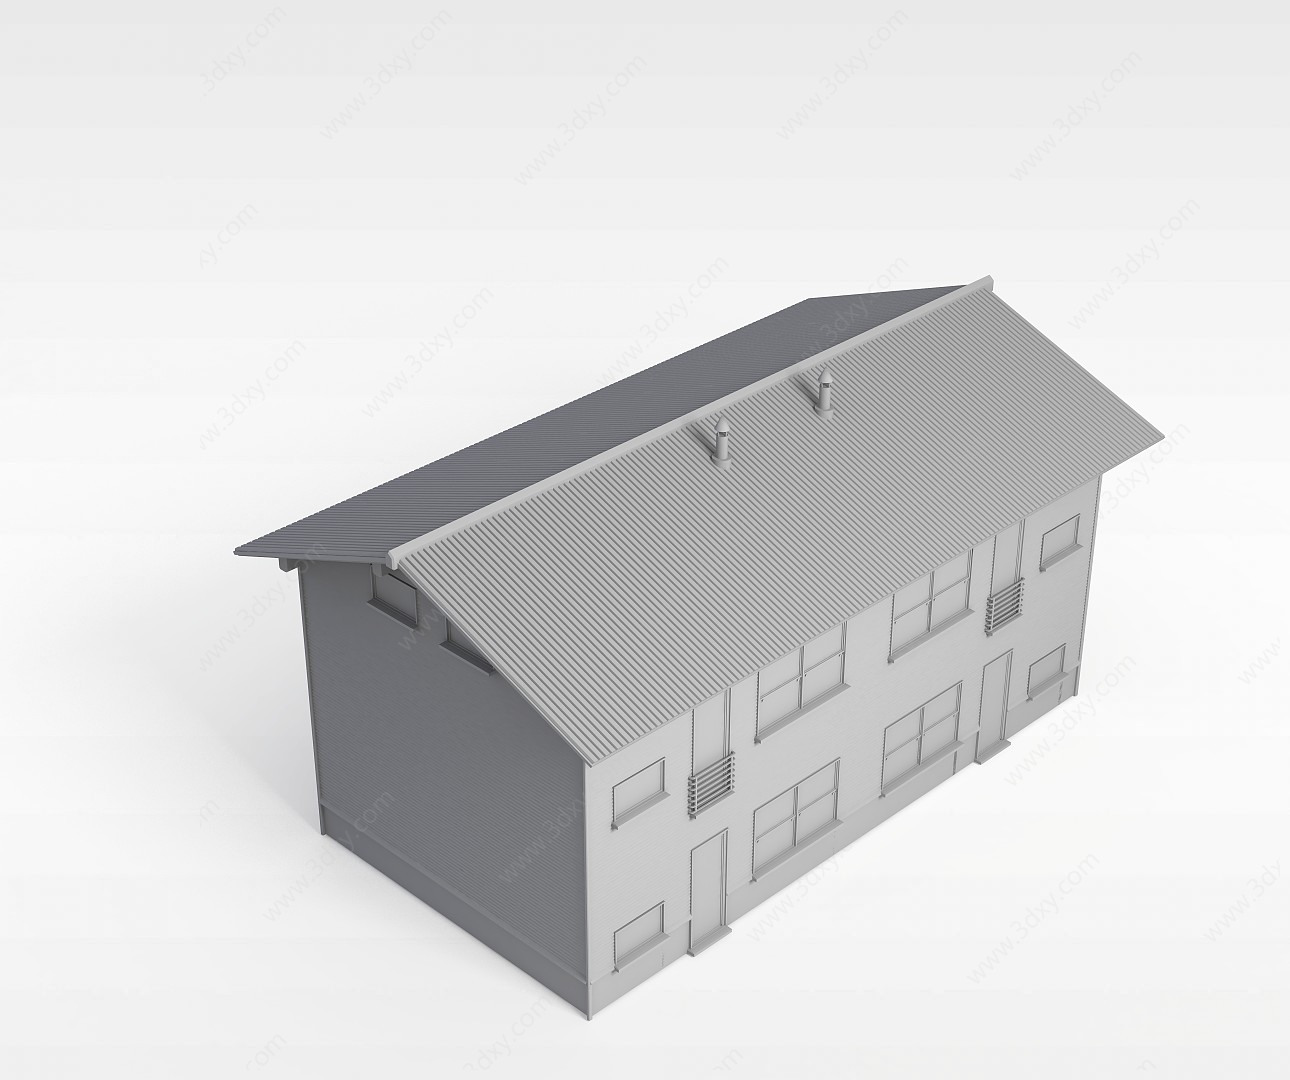 居民楼3D模型